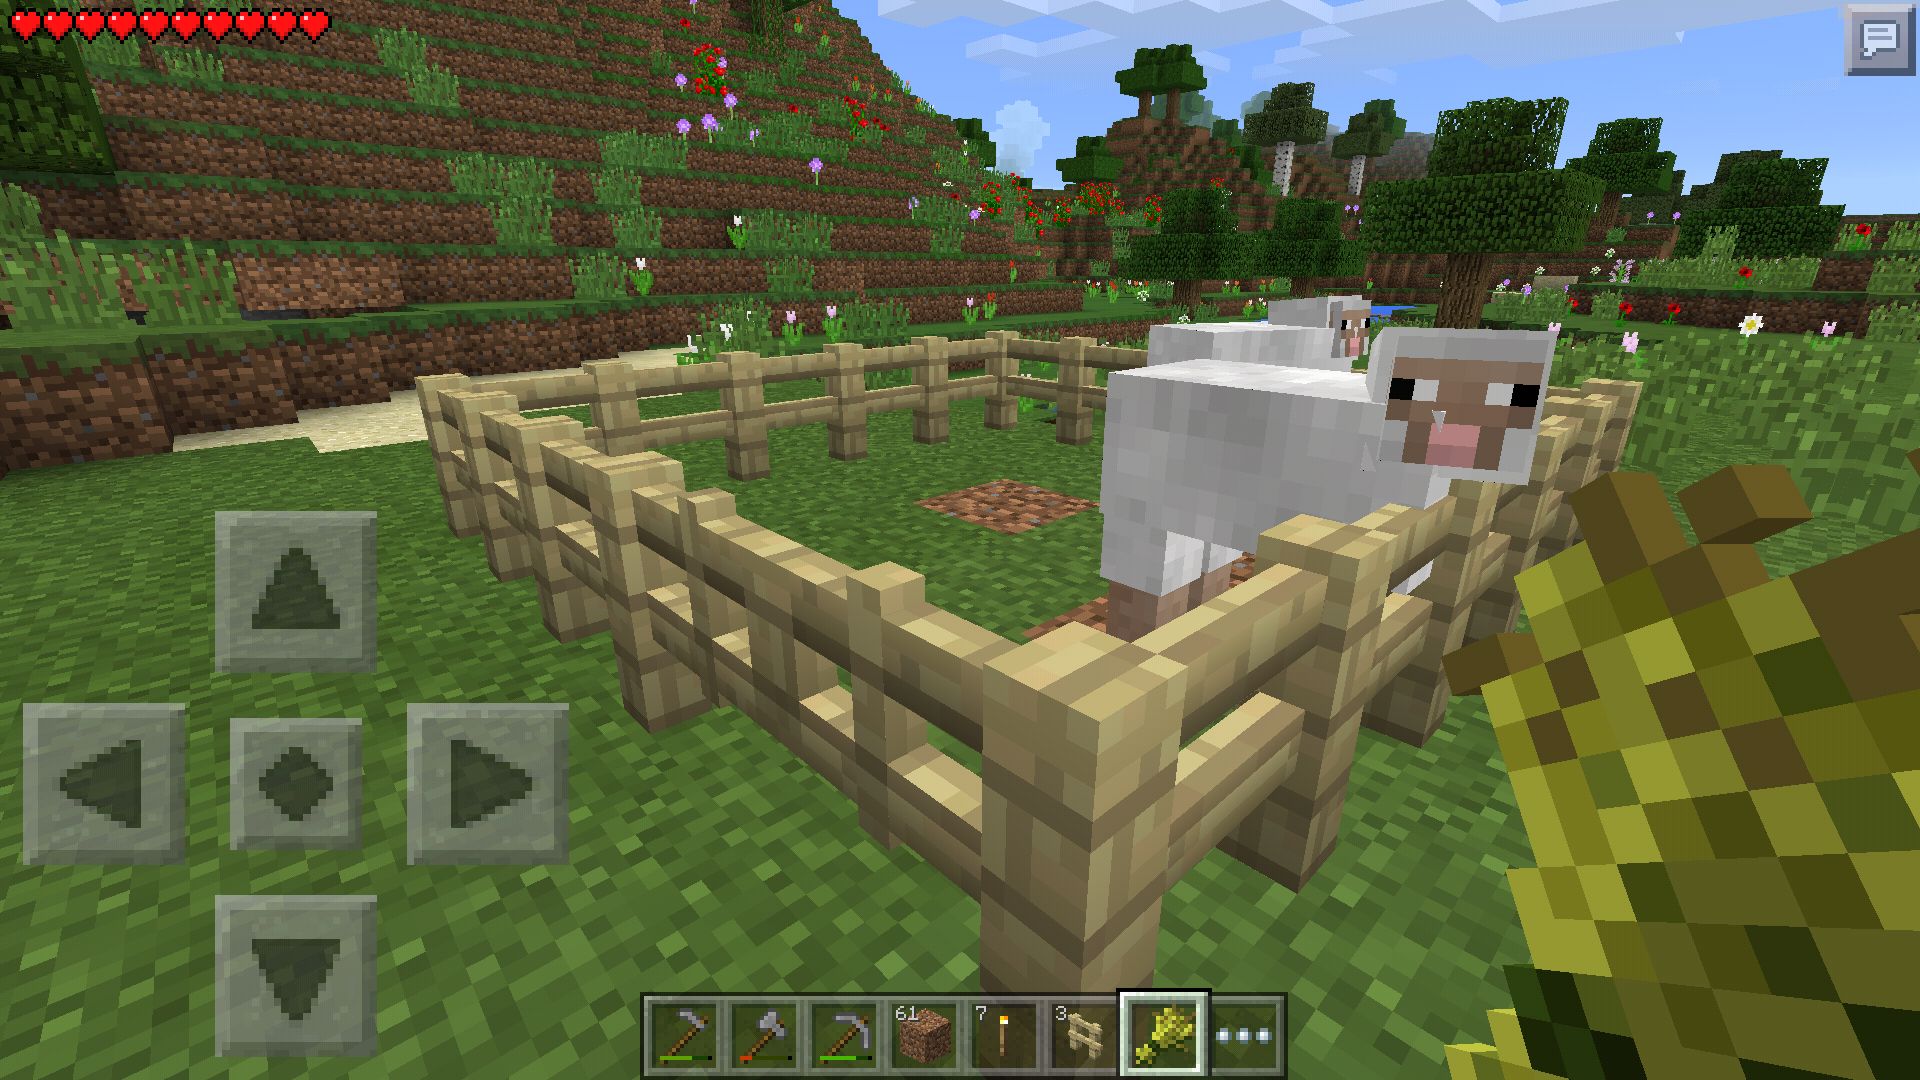 Minecraft Pocket Edition 楽しい牧羊ライフ 羊を飼うのに適したseed値を探してみた 14年12月29日 エキサイトニュース